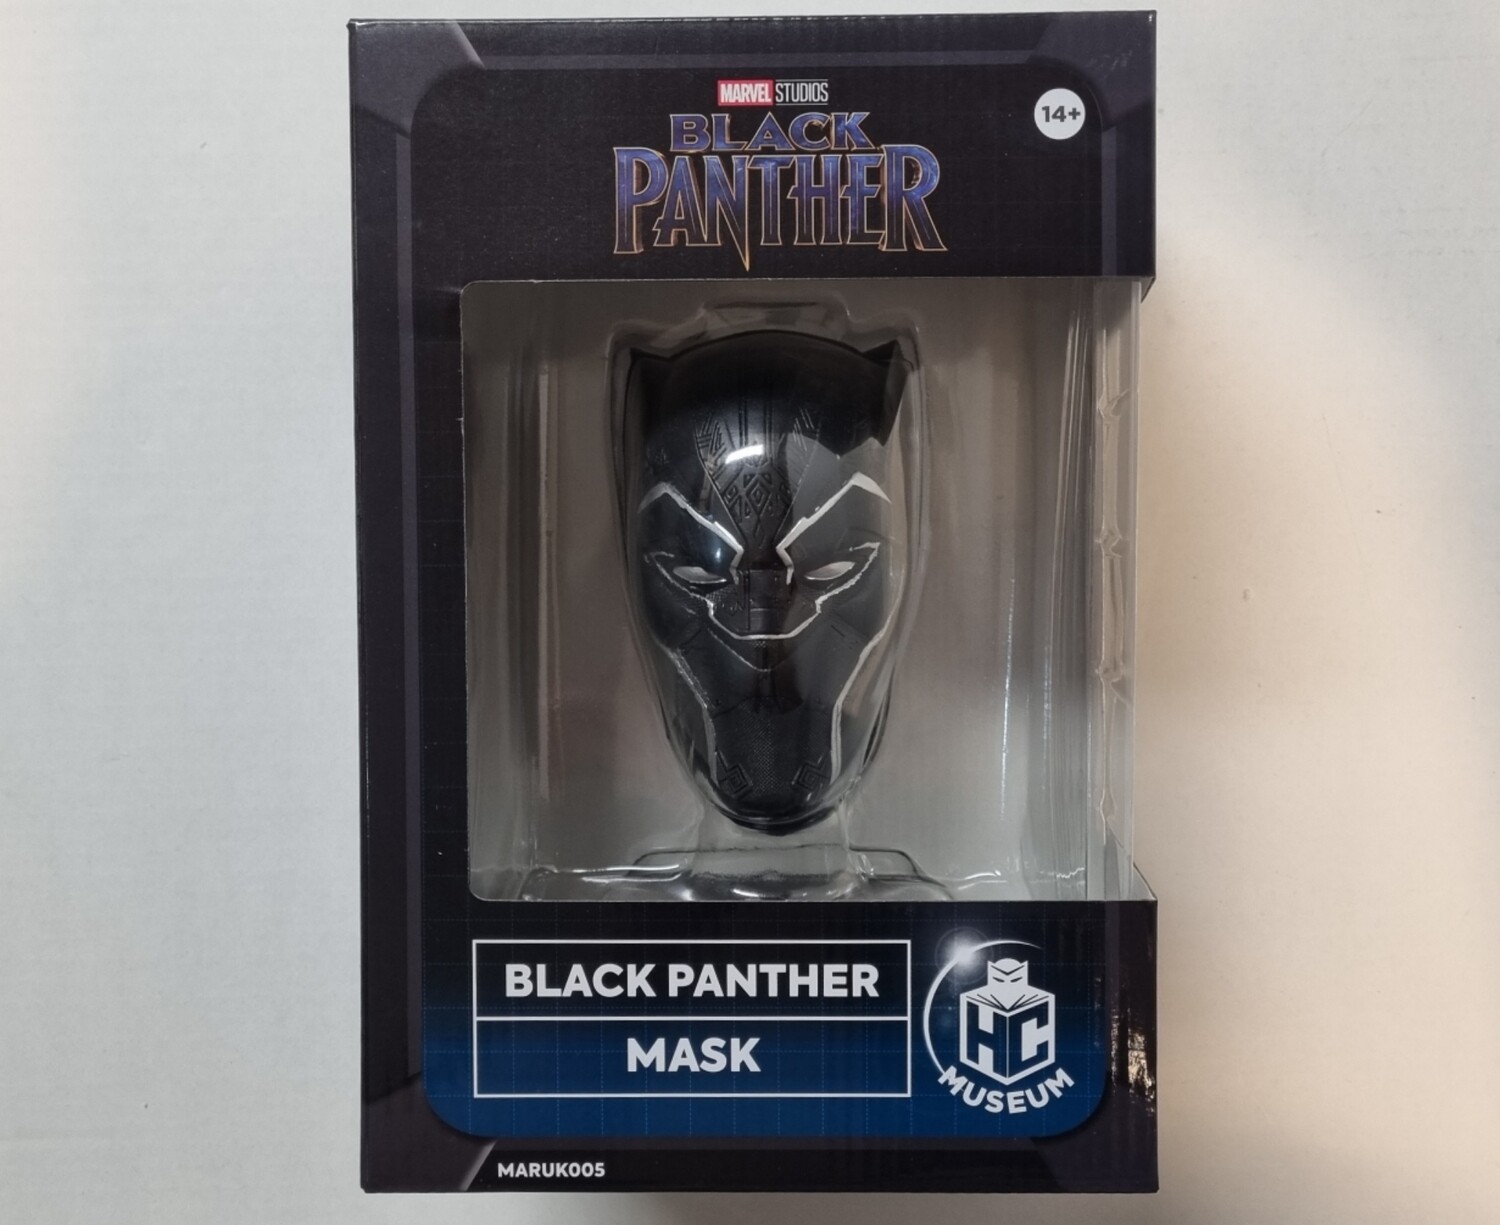 Mask Black Panther op sokkel,  Marvel Studio's